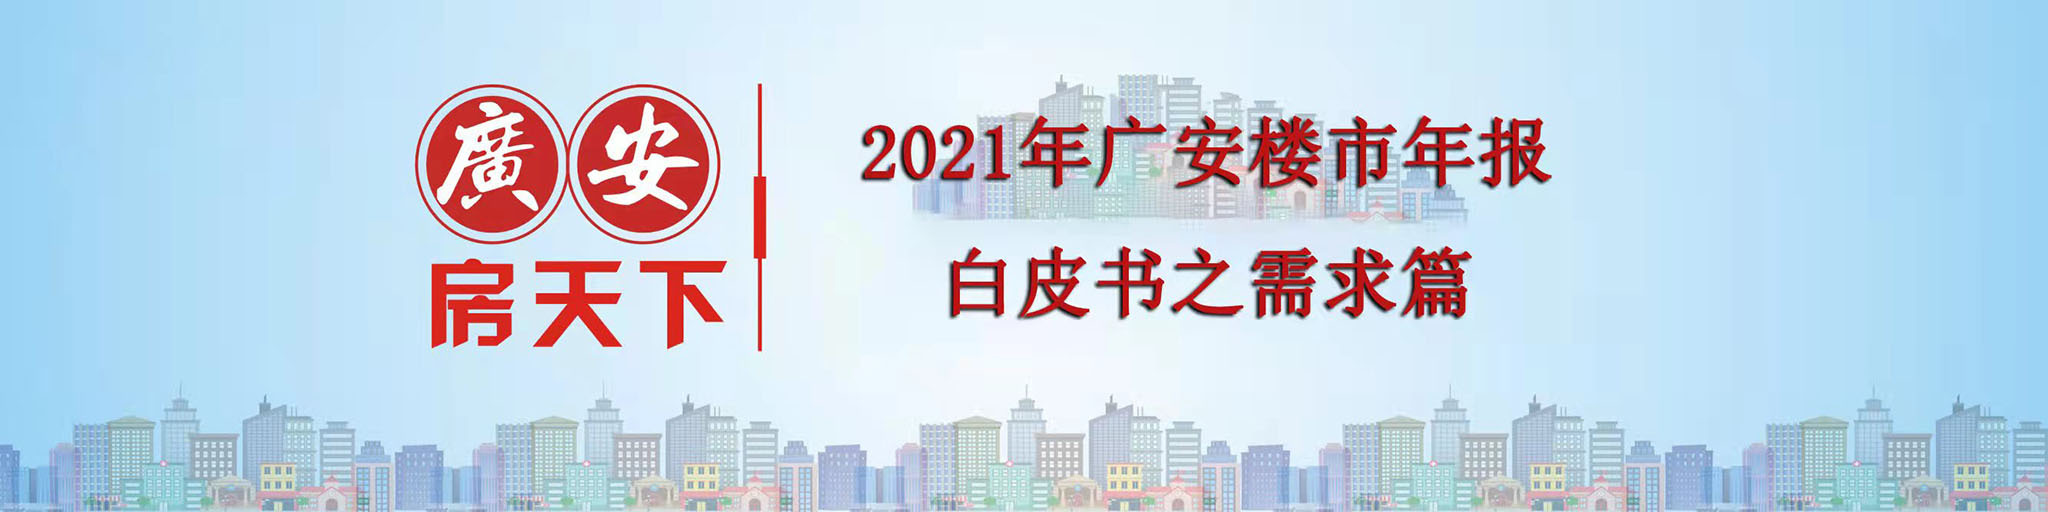 2021广安楼市白皮书发布，全面解读广安房地产市场